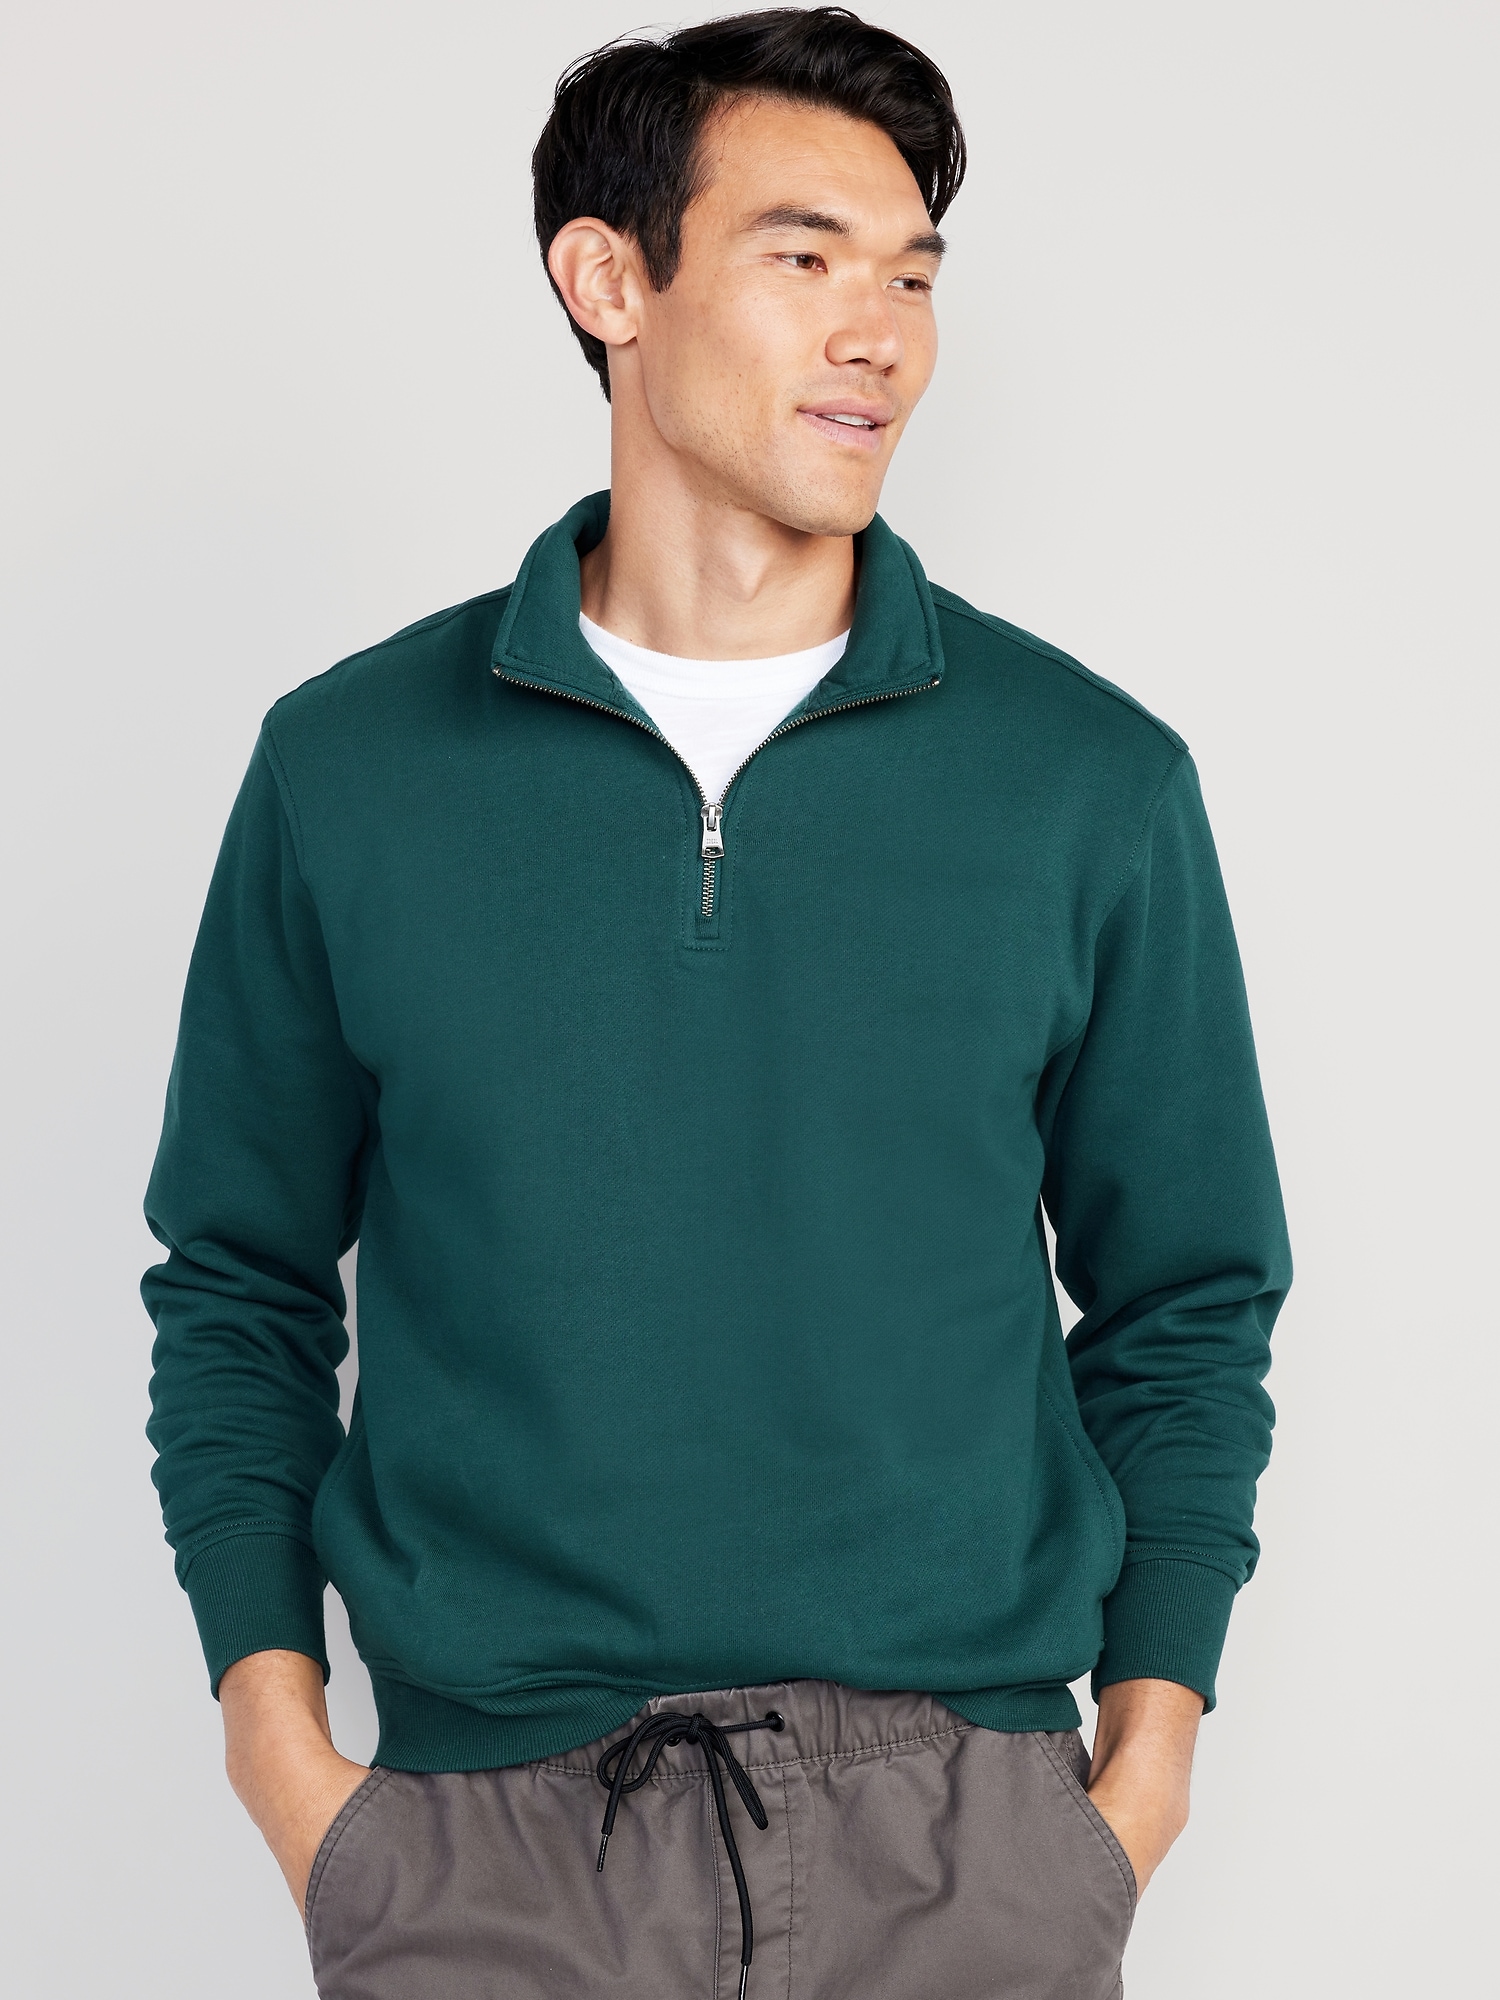 Old Navy Oversized Quarter-Zip Mock-Neck Sweatshirt for Men green. 1